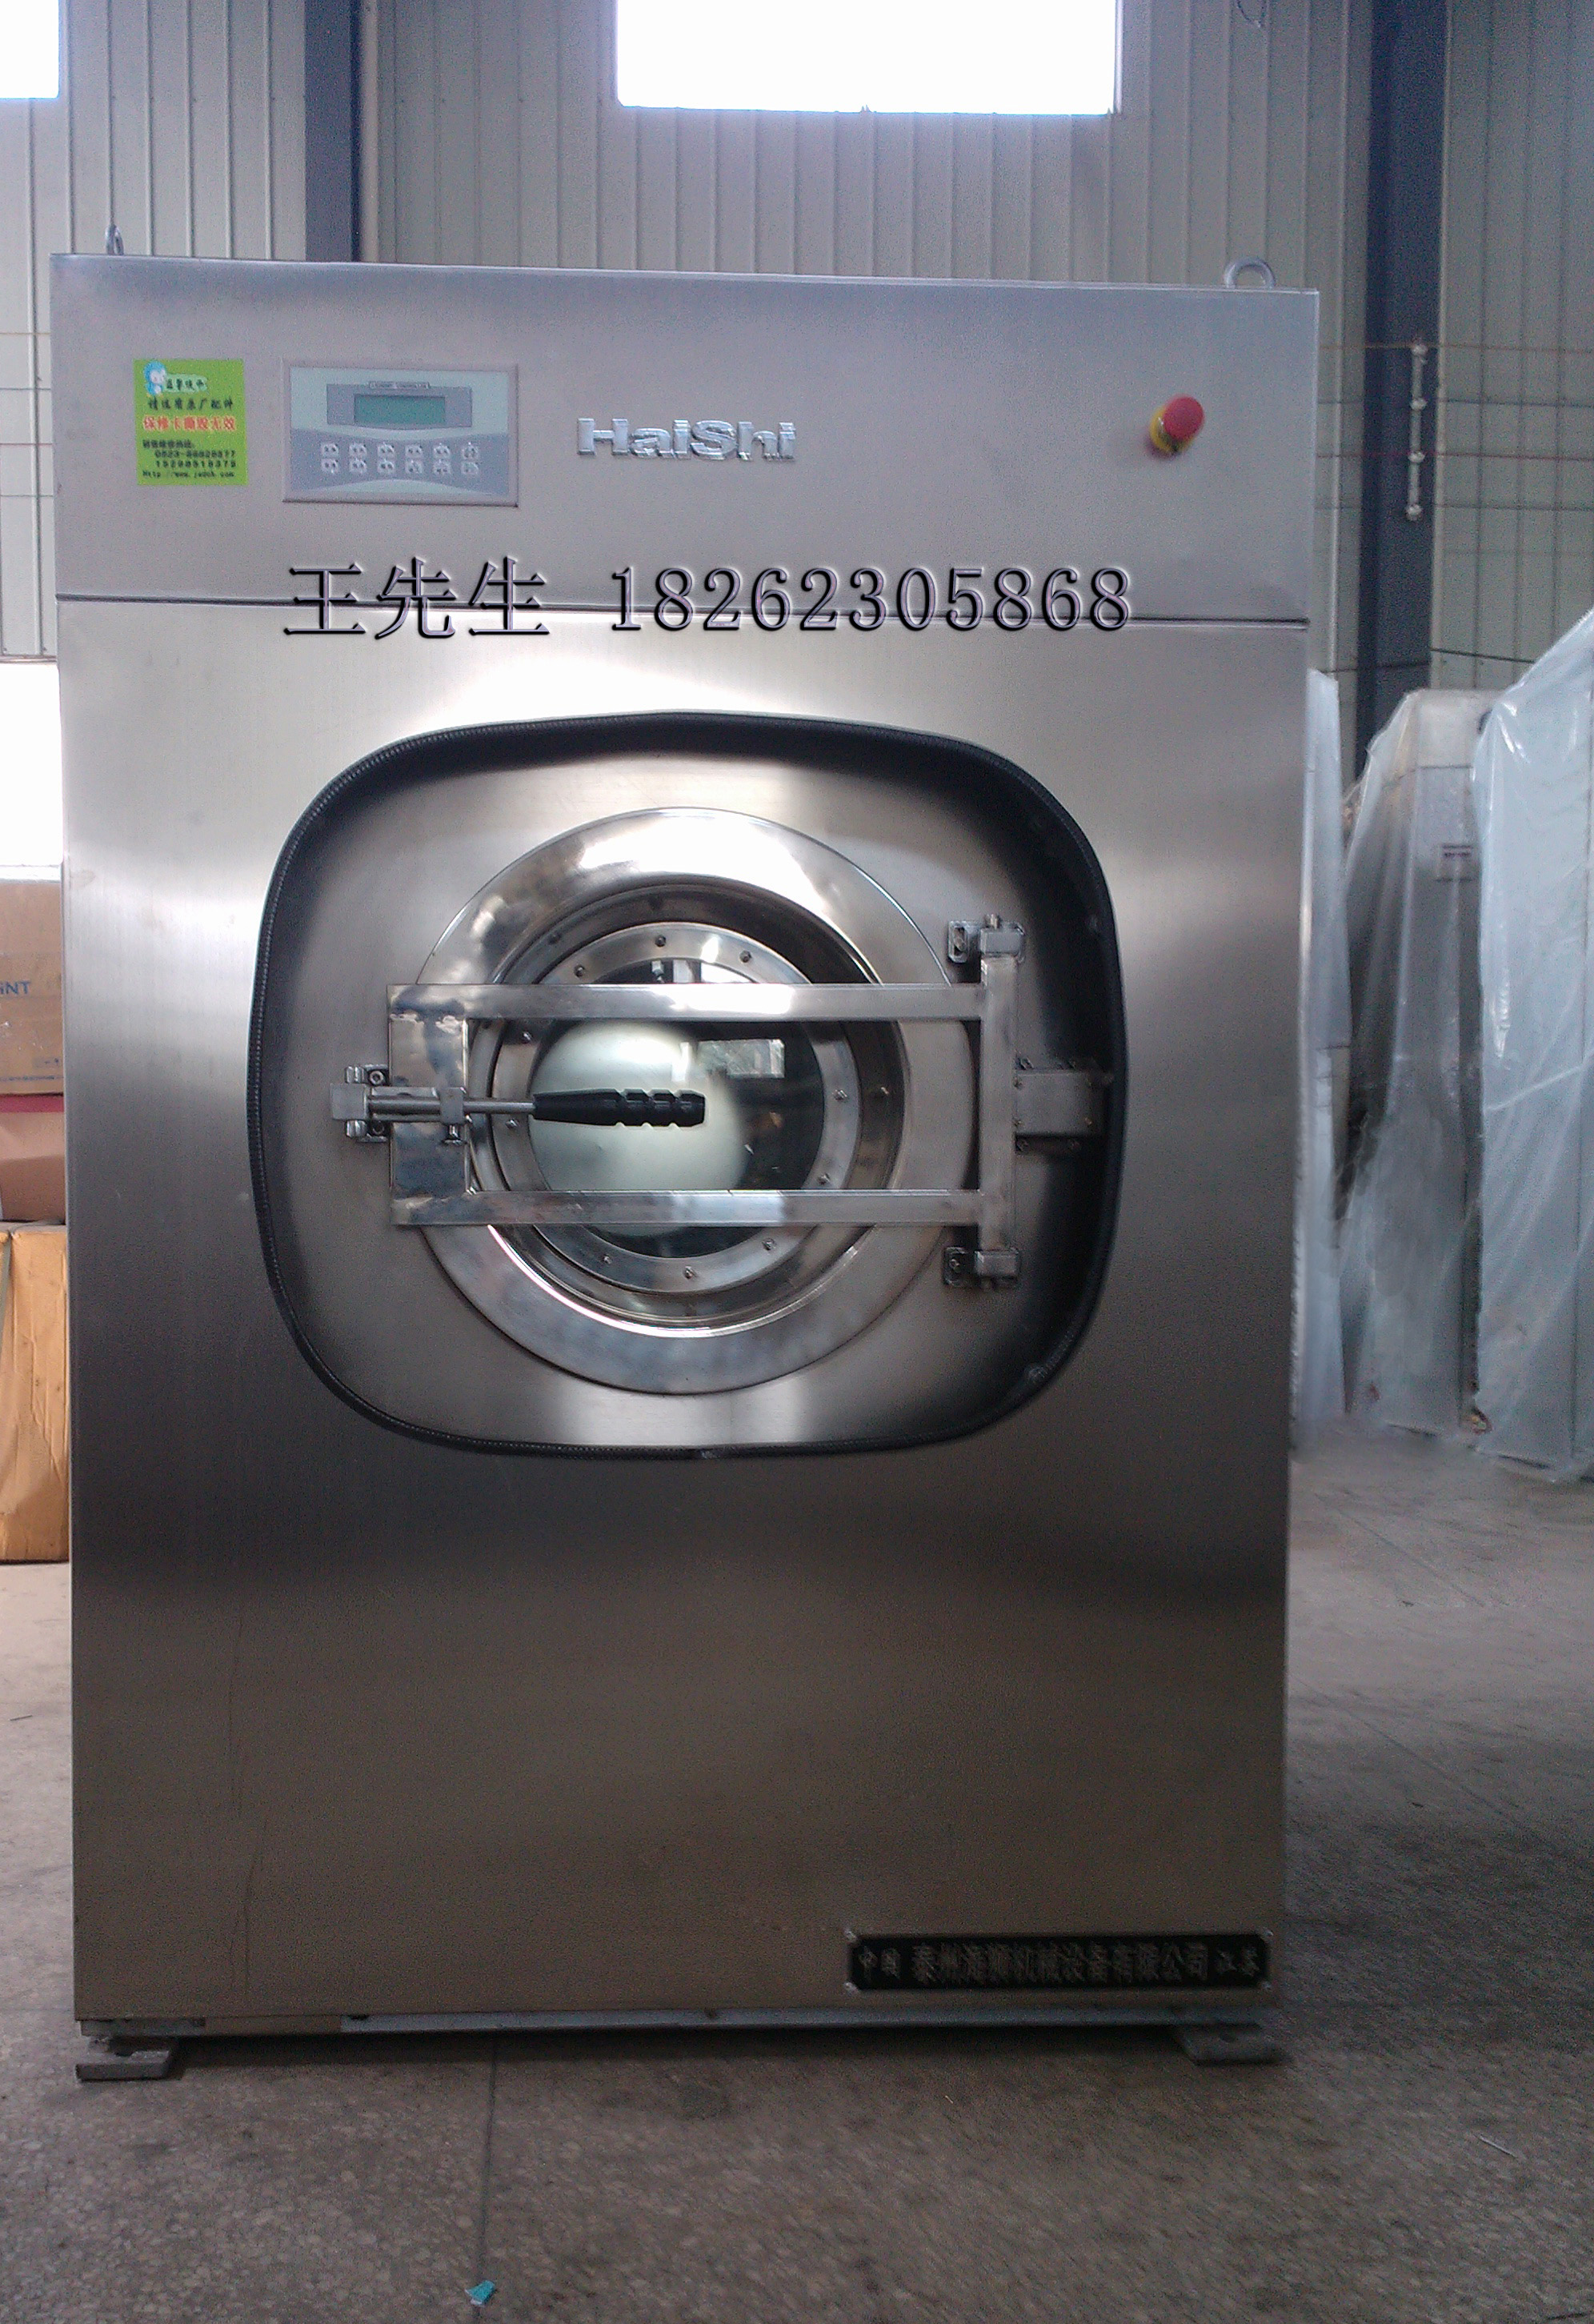 海狮洗涤机械供应XGQ系列15公斤洗脱机图片